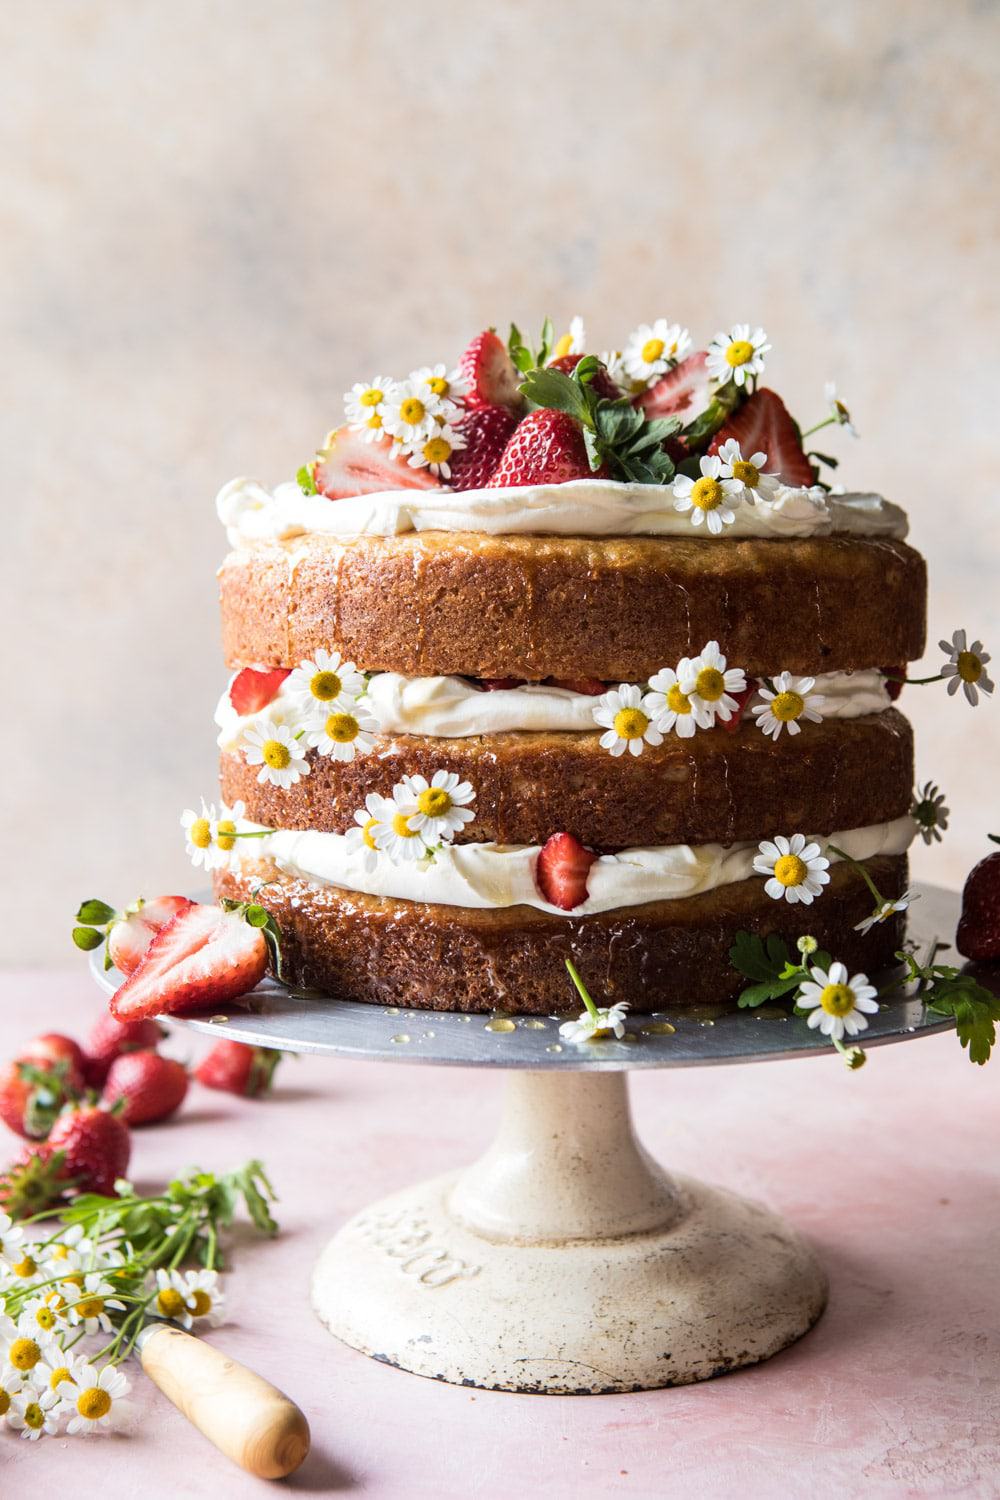 Strawberry Chamomile Naked Cake | halfbakedharvest.com #cake #spring #strawberry #recipes #easter